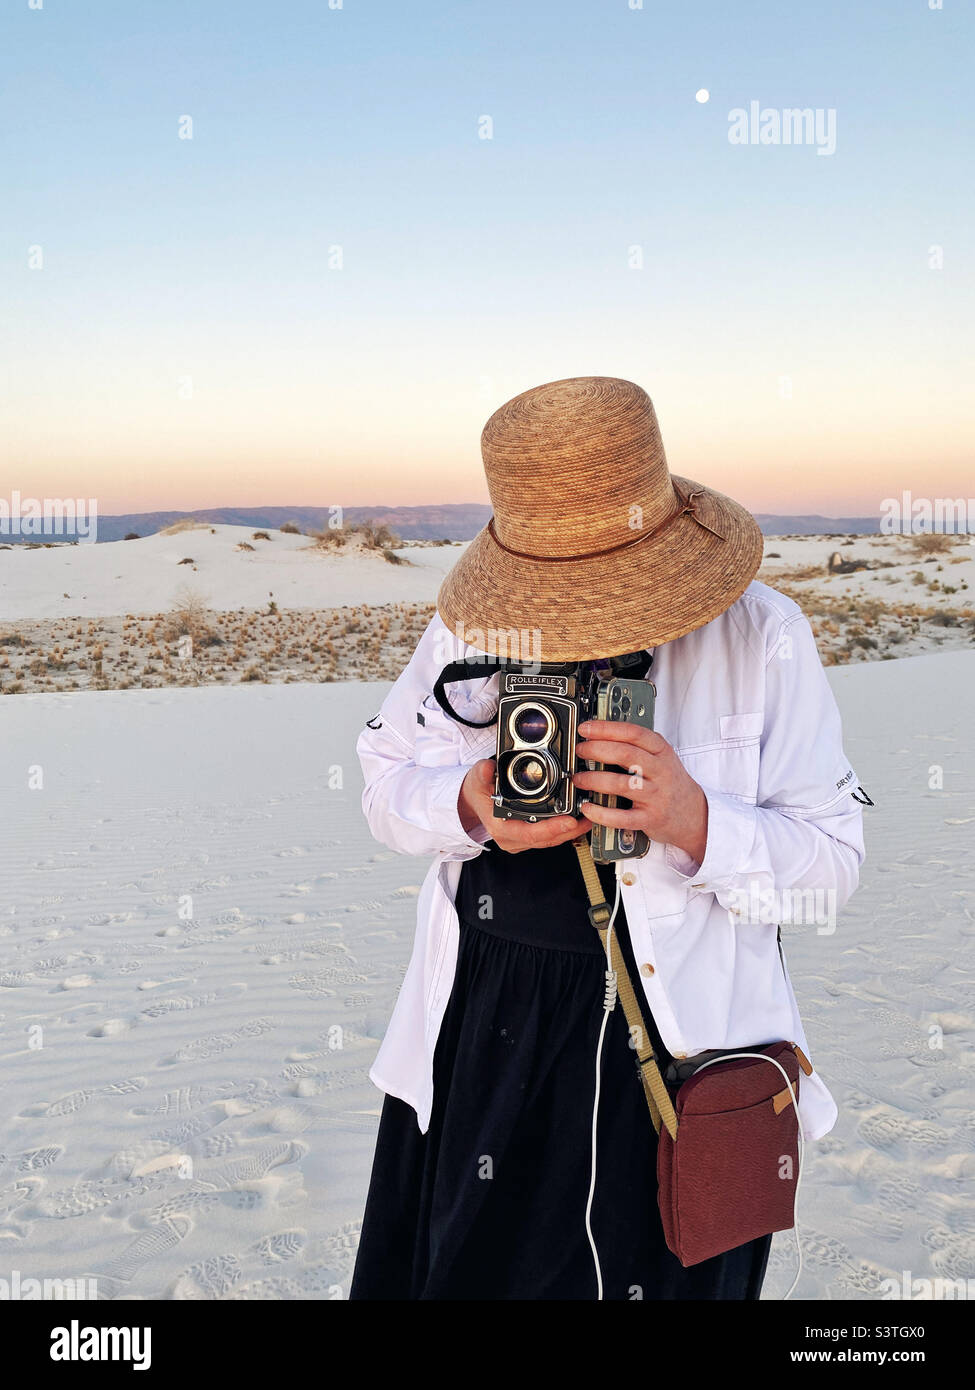 Fotógrafo con cámara analógica fotografiando durante la puesta de sol en el monumento nacional de arenas blancas de Nuevo méxico Foto de stock